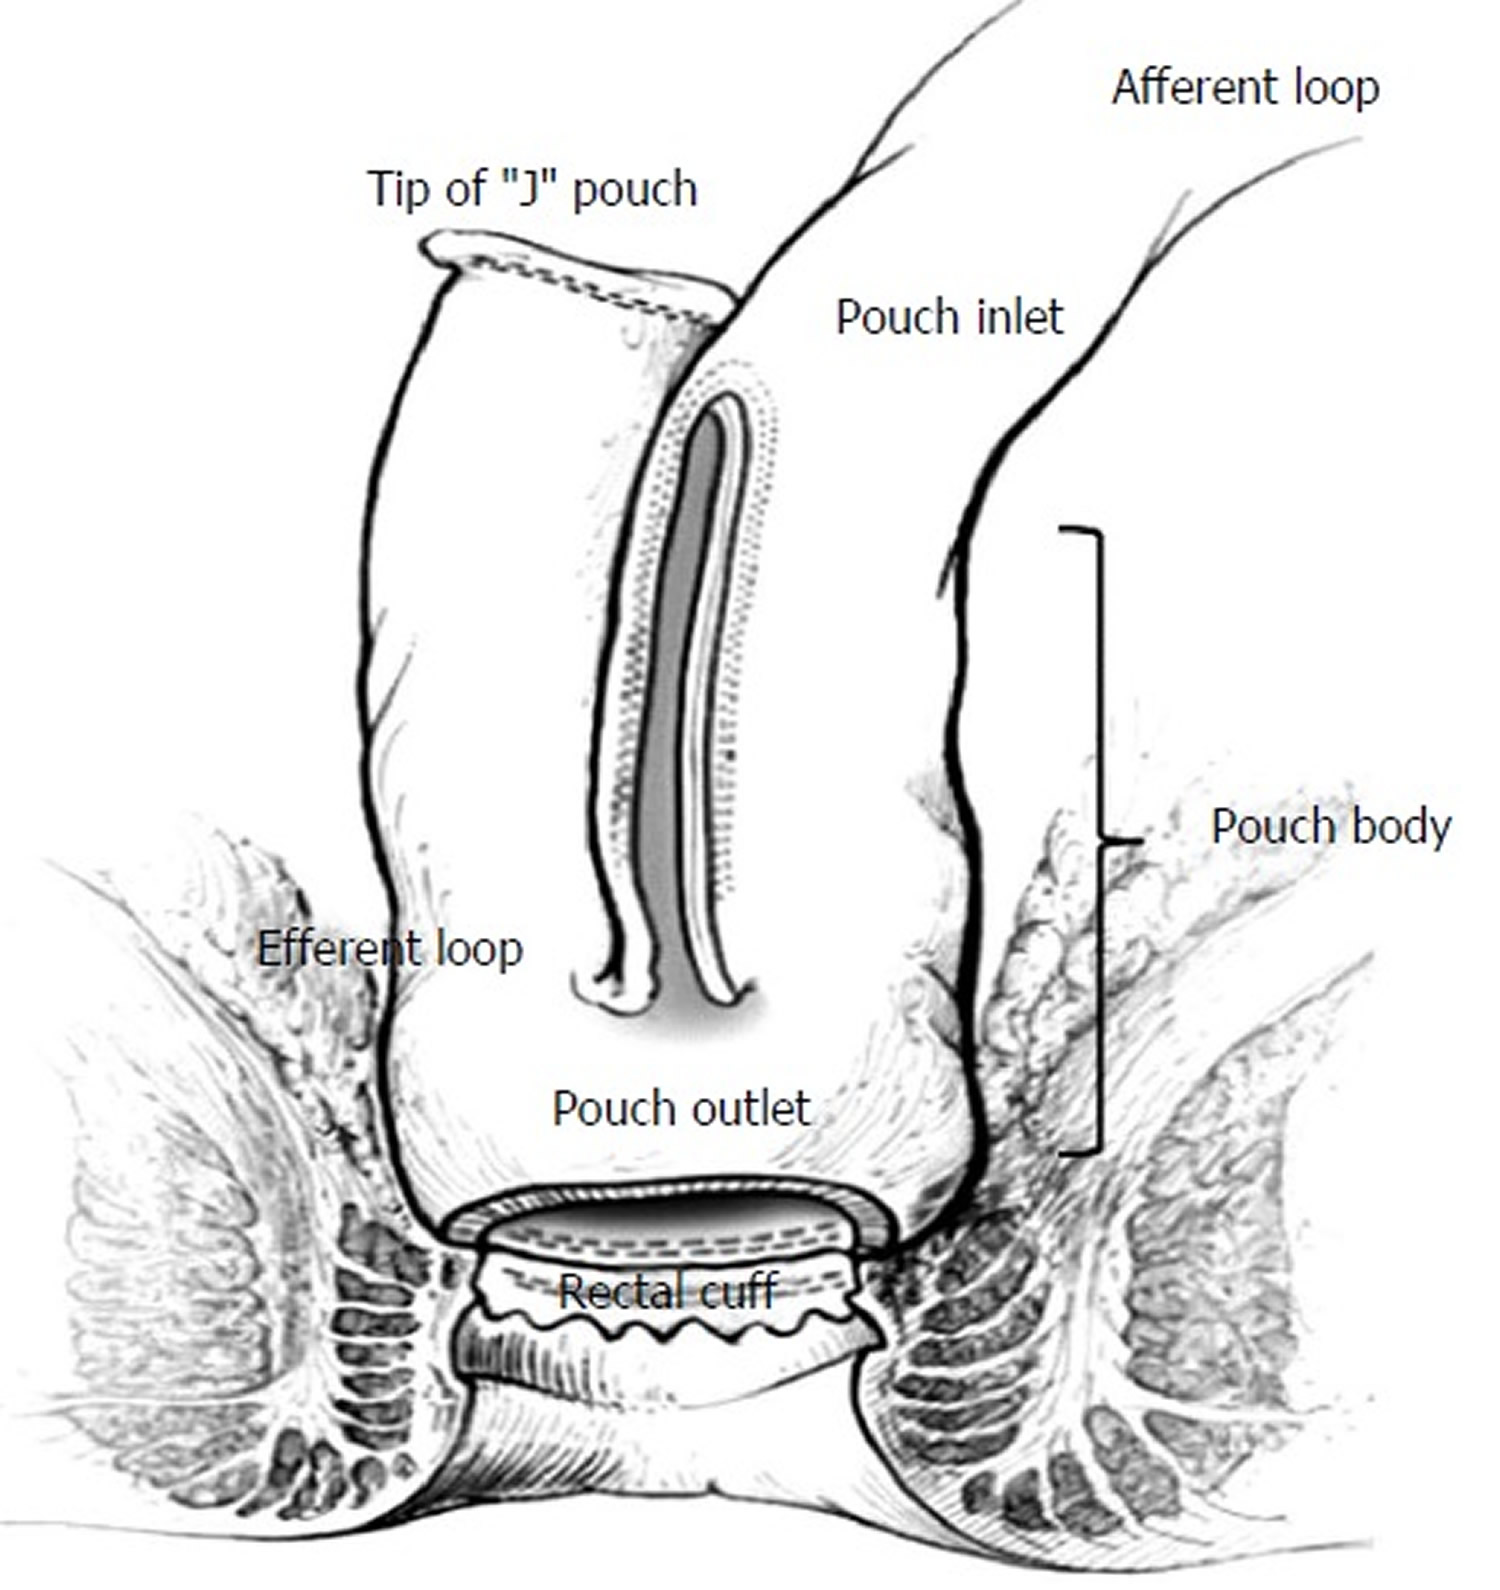 J-pouch anatomy